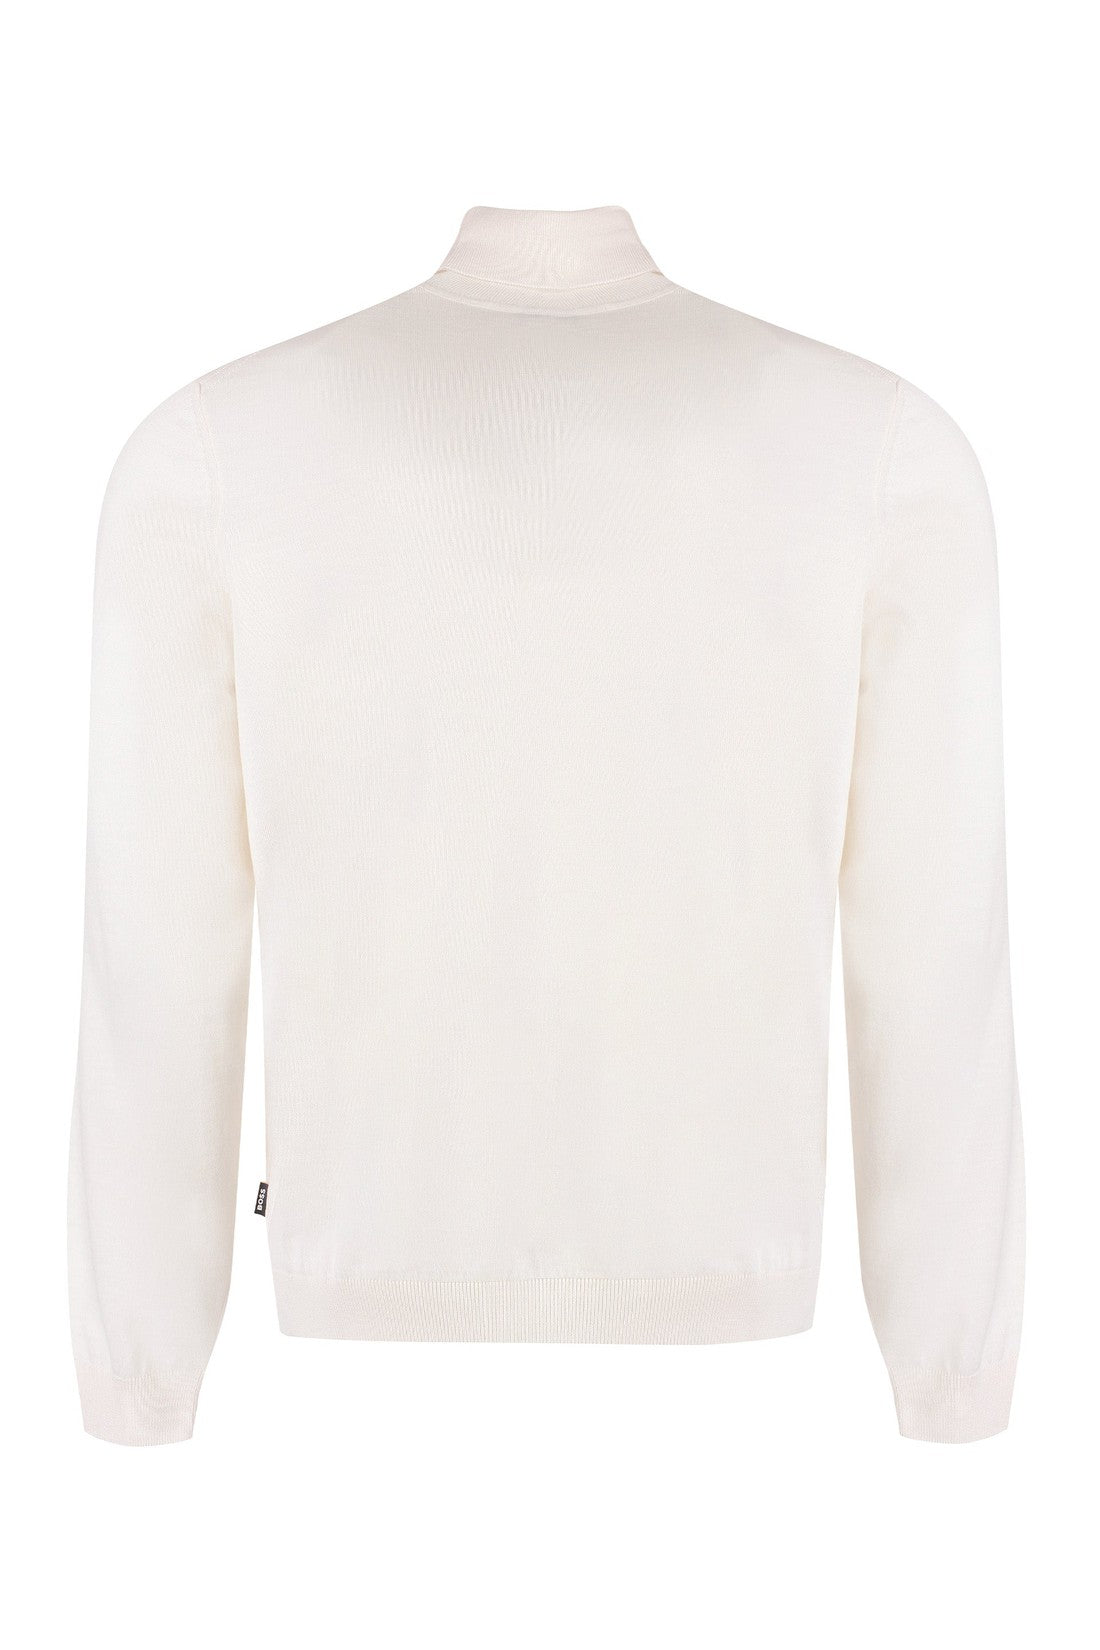 BOSS-OUTLET-SALE-Virgin-wool turtleneck sweater-ARCHIVIST